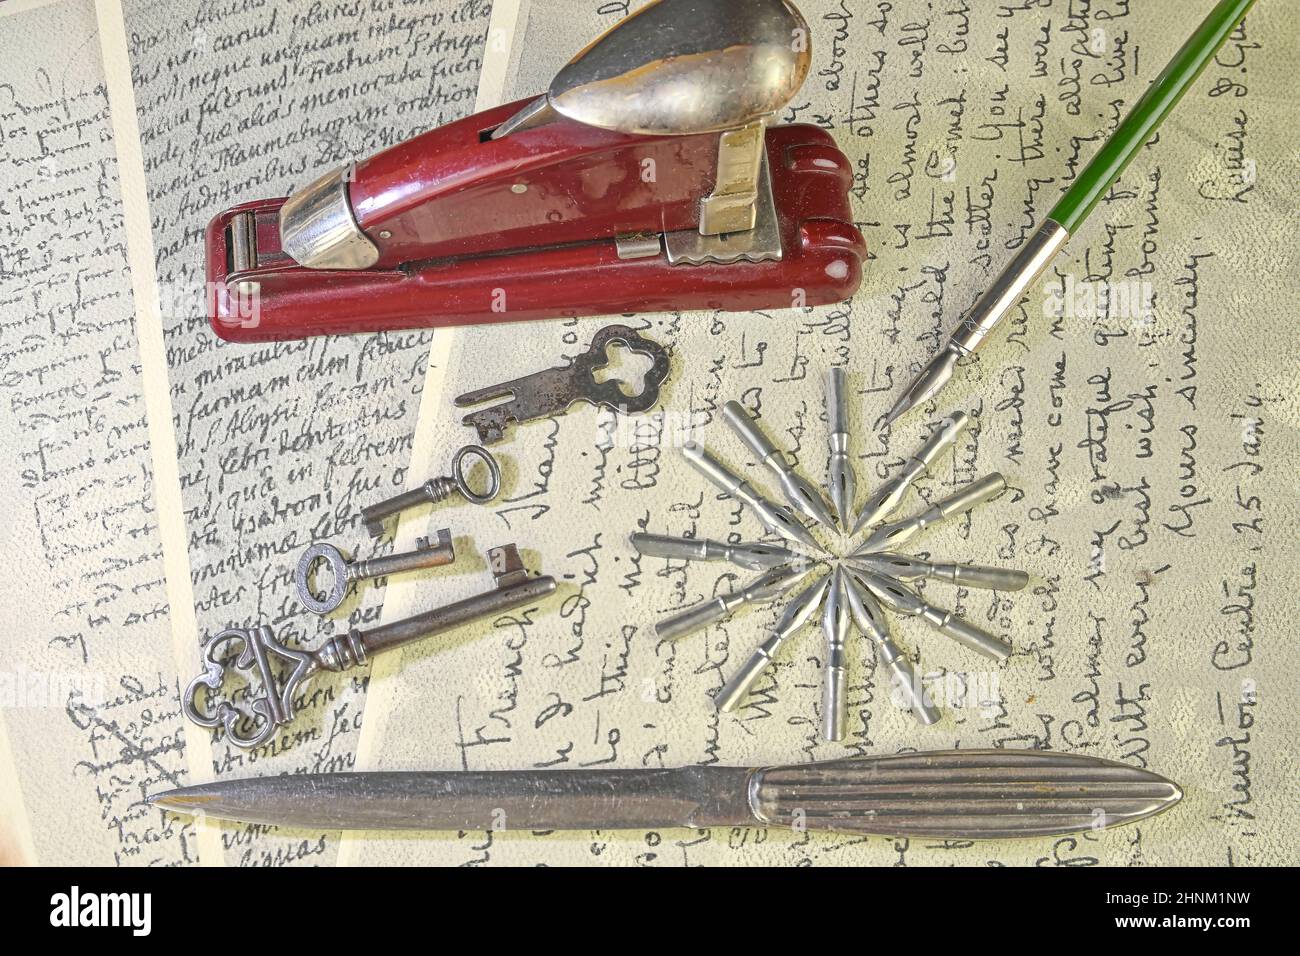 Nahaufnahme von Accessoires auf Vintage-Handschrift. Vintage-Schlüssel, Hefter, Papiermesser, Metallspitzen und alter Stift. Vintage-Schreibwaren. Flach liegend Stockfoto